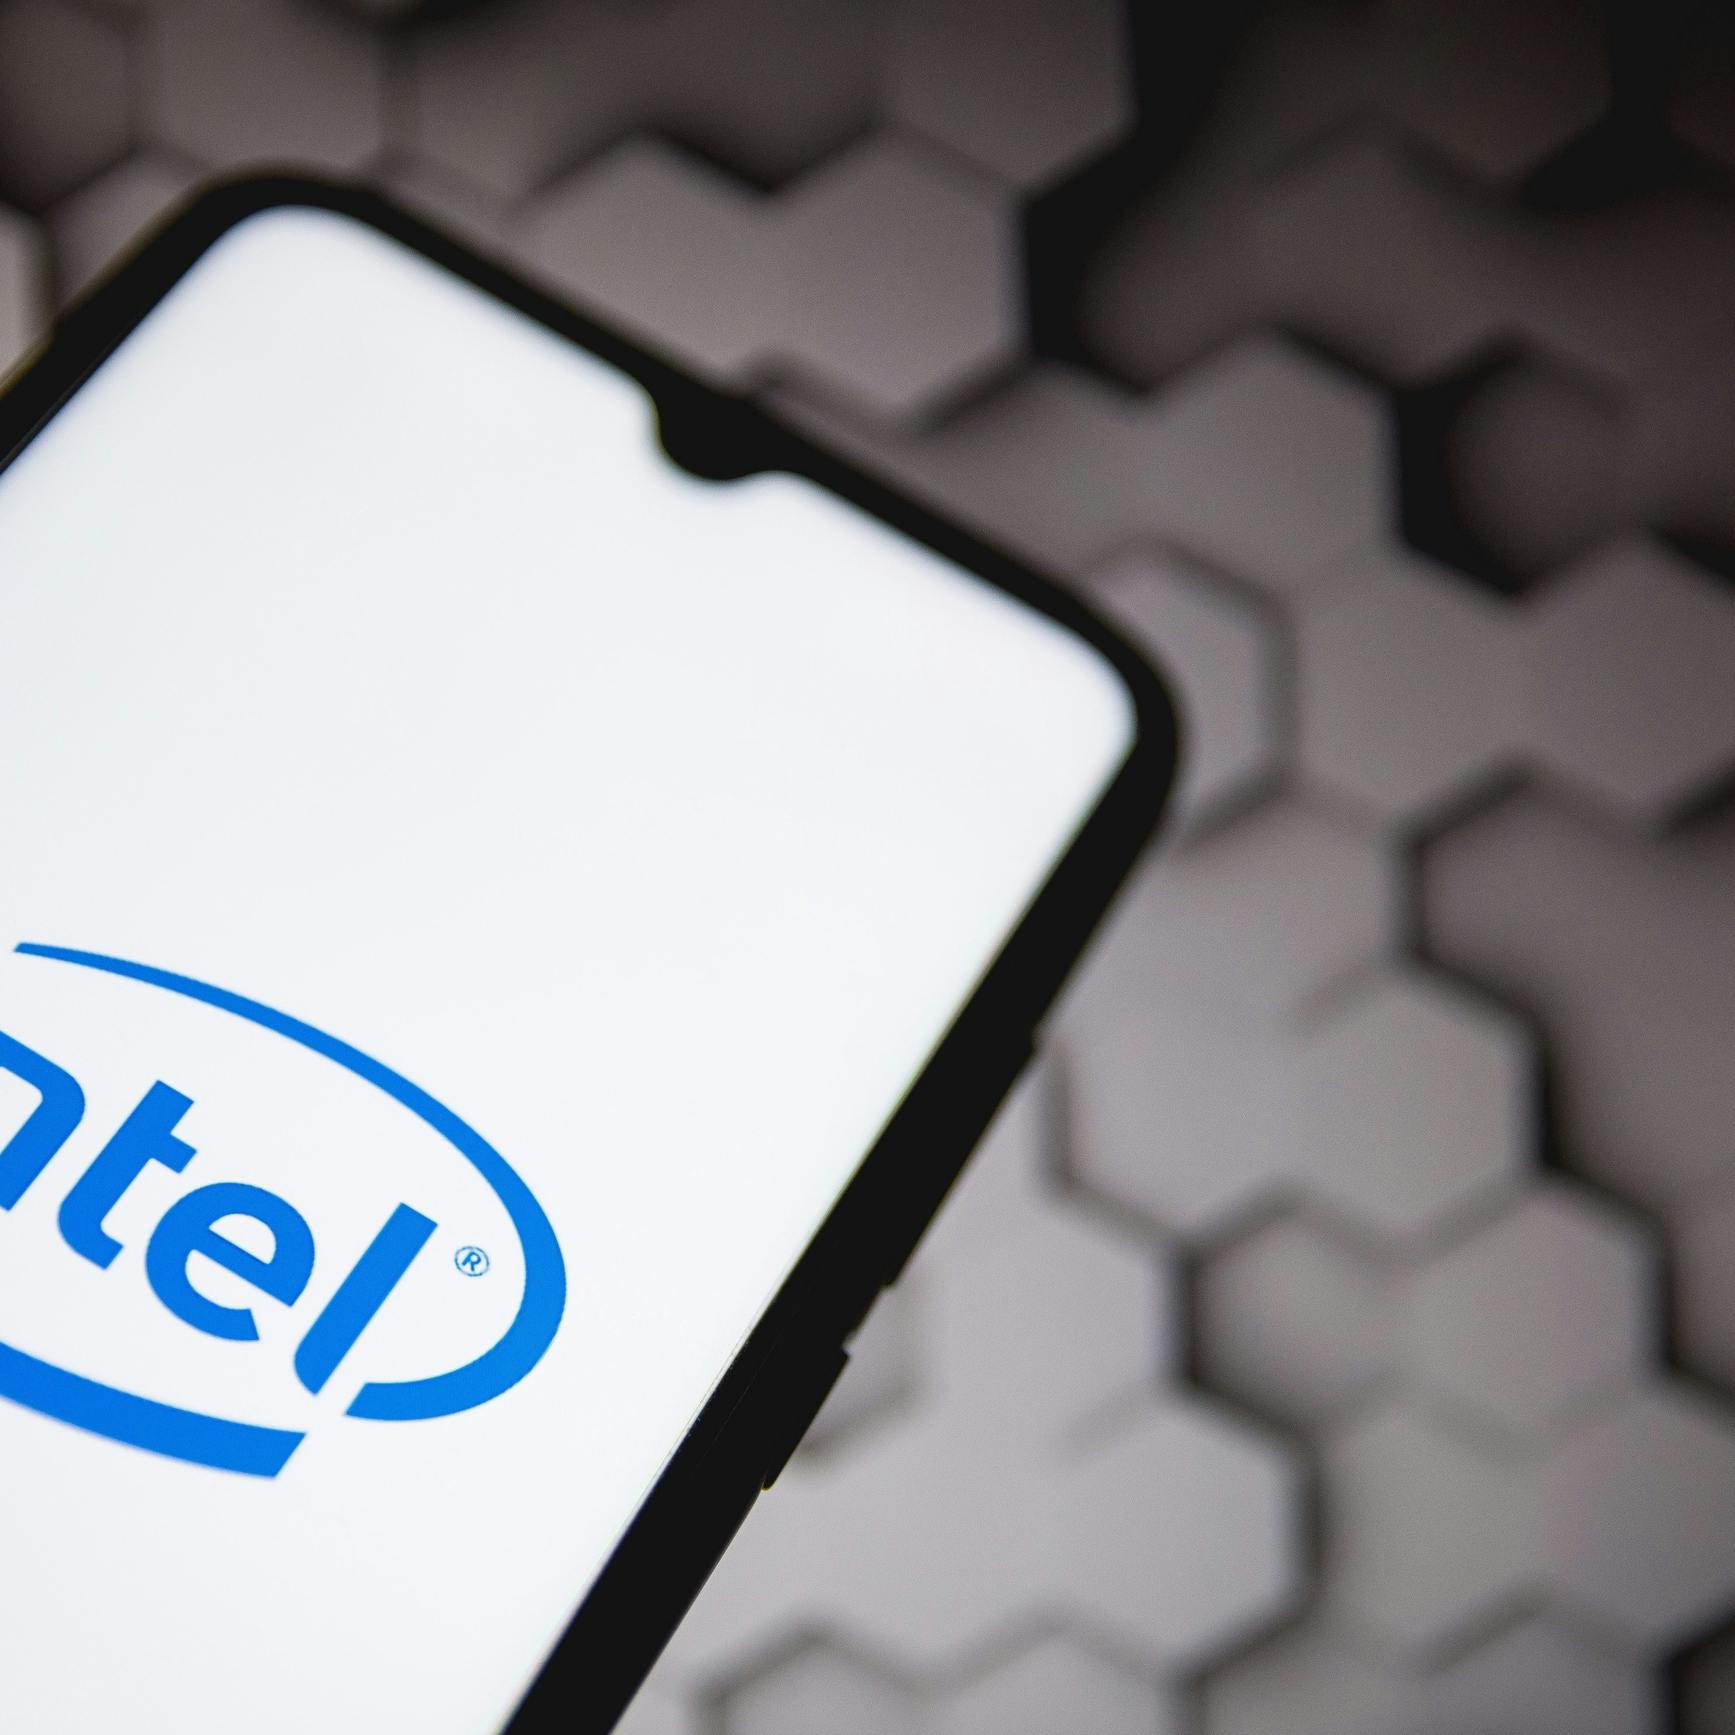 Fors minder omzet voor chipbedrijf Intel